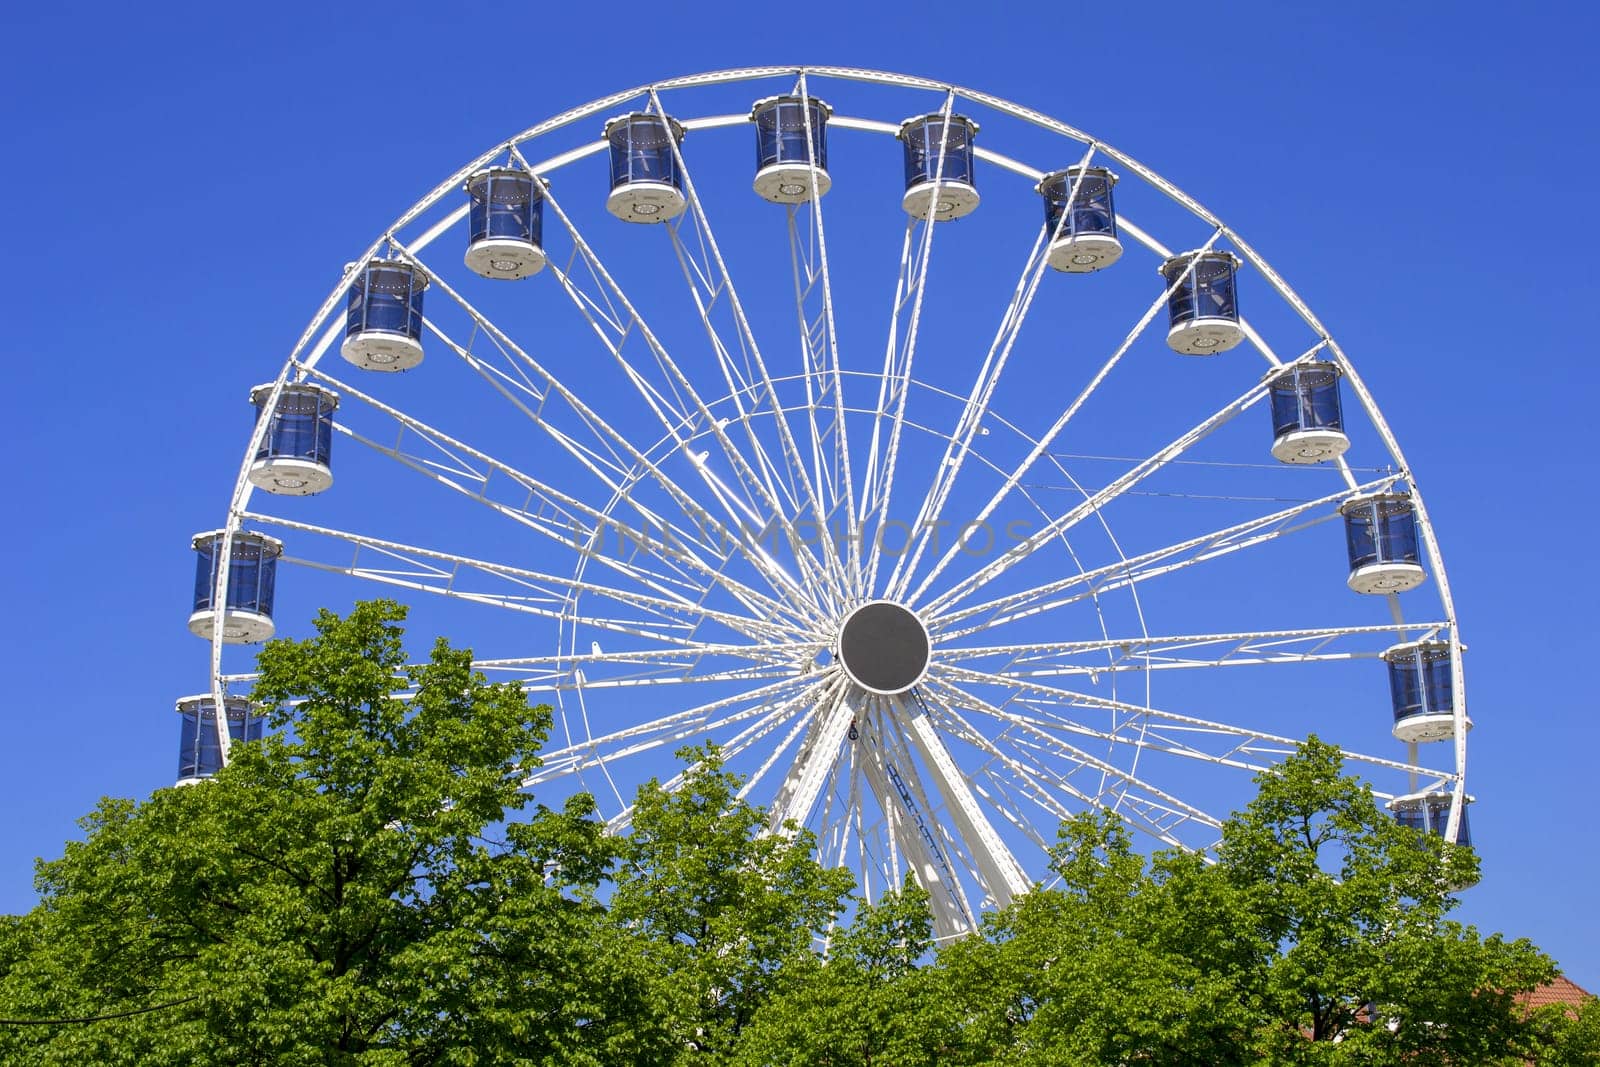 Ferris Wheel Over Blue Sky by Maksym